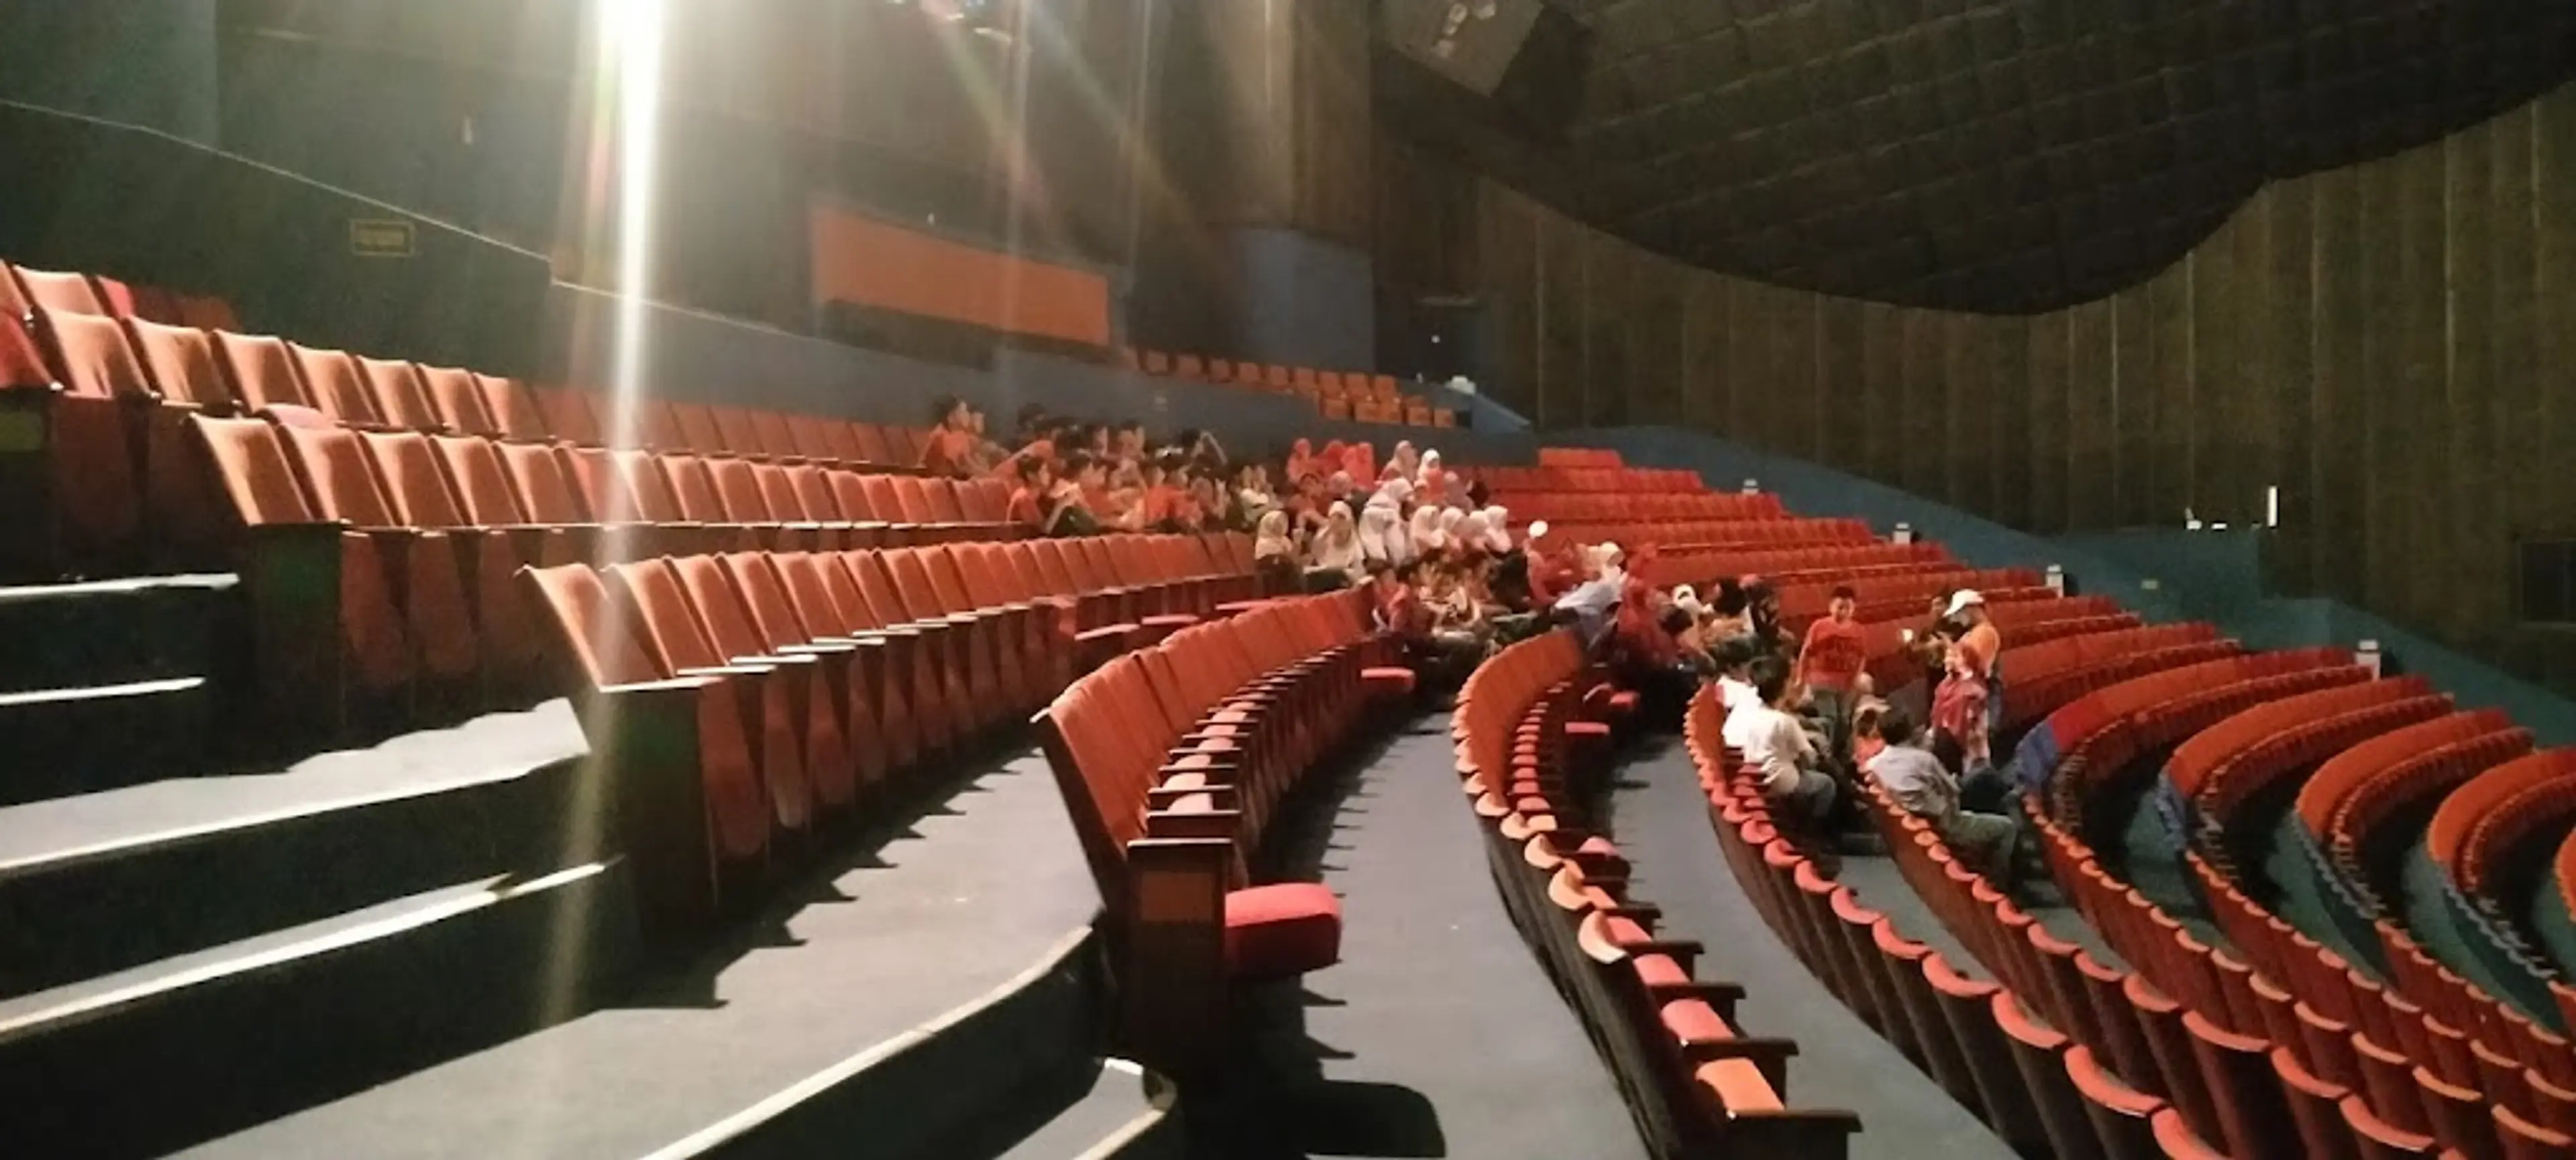 Keong Mas IMAX Theater